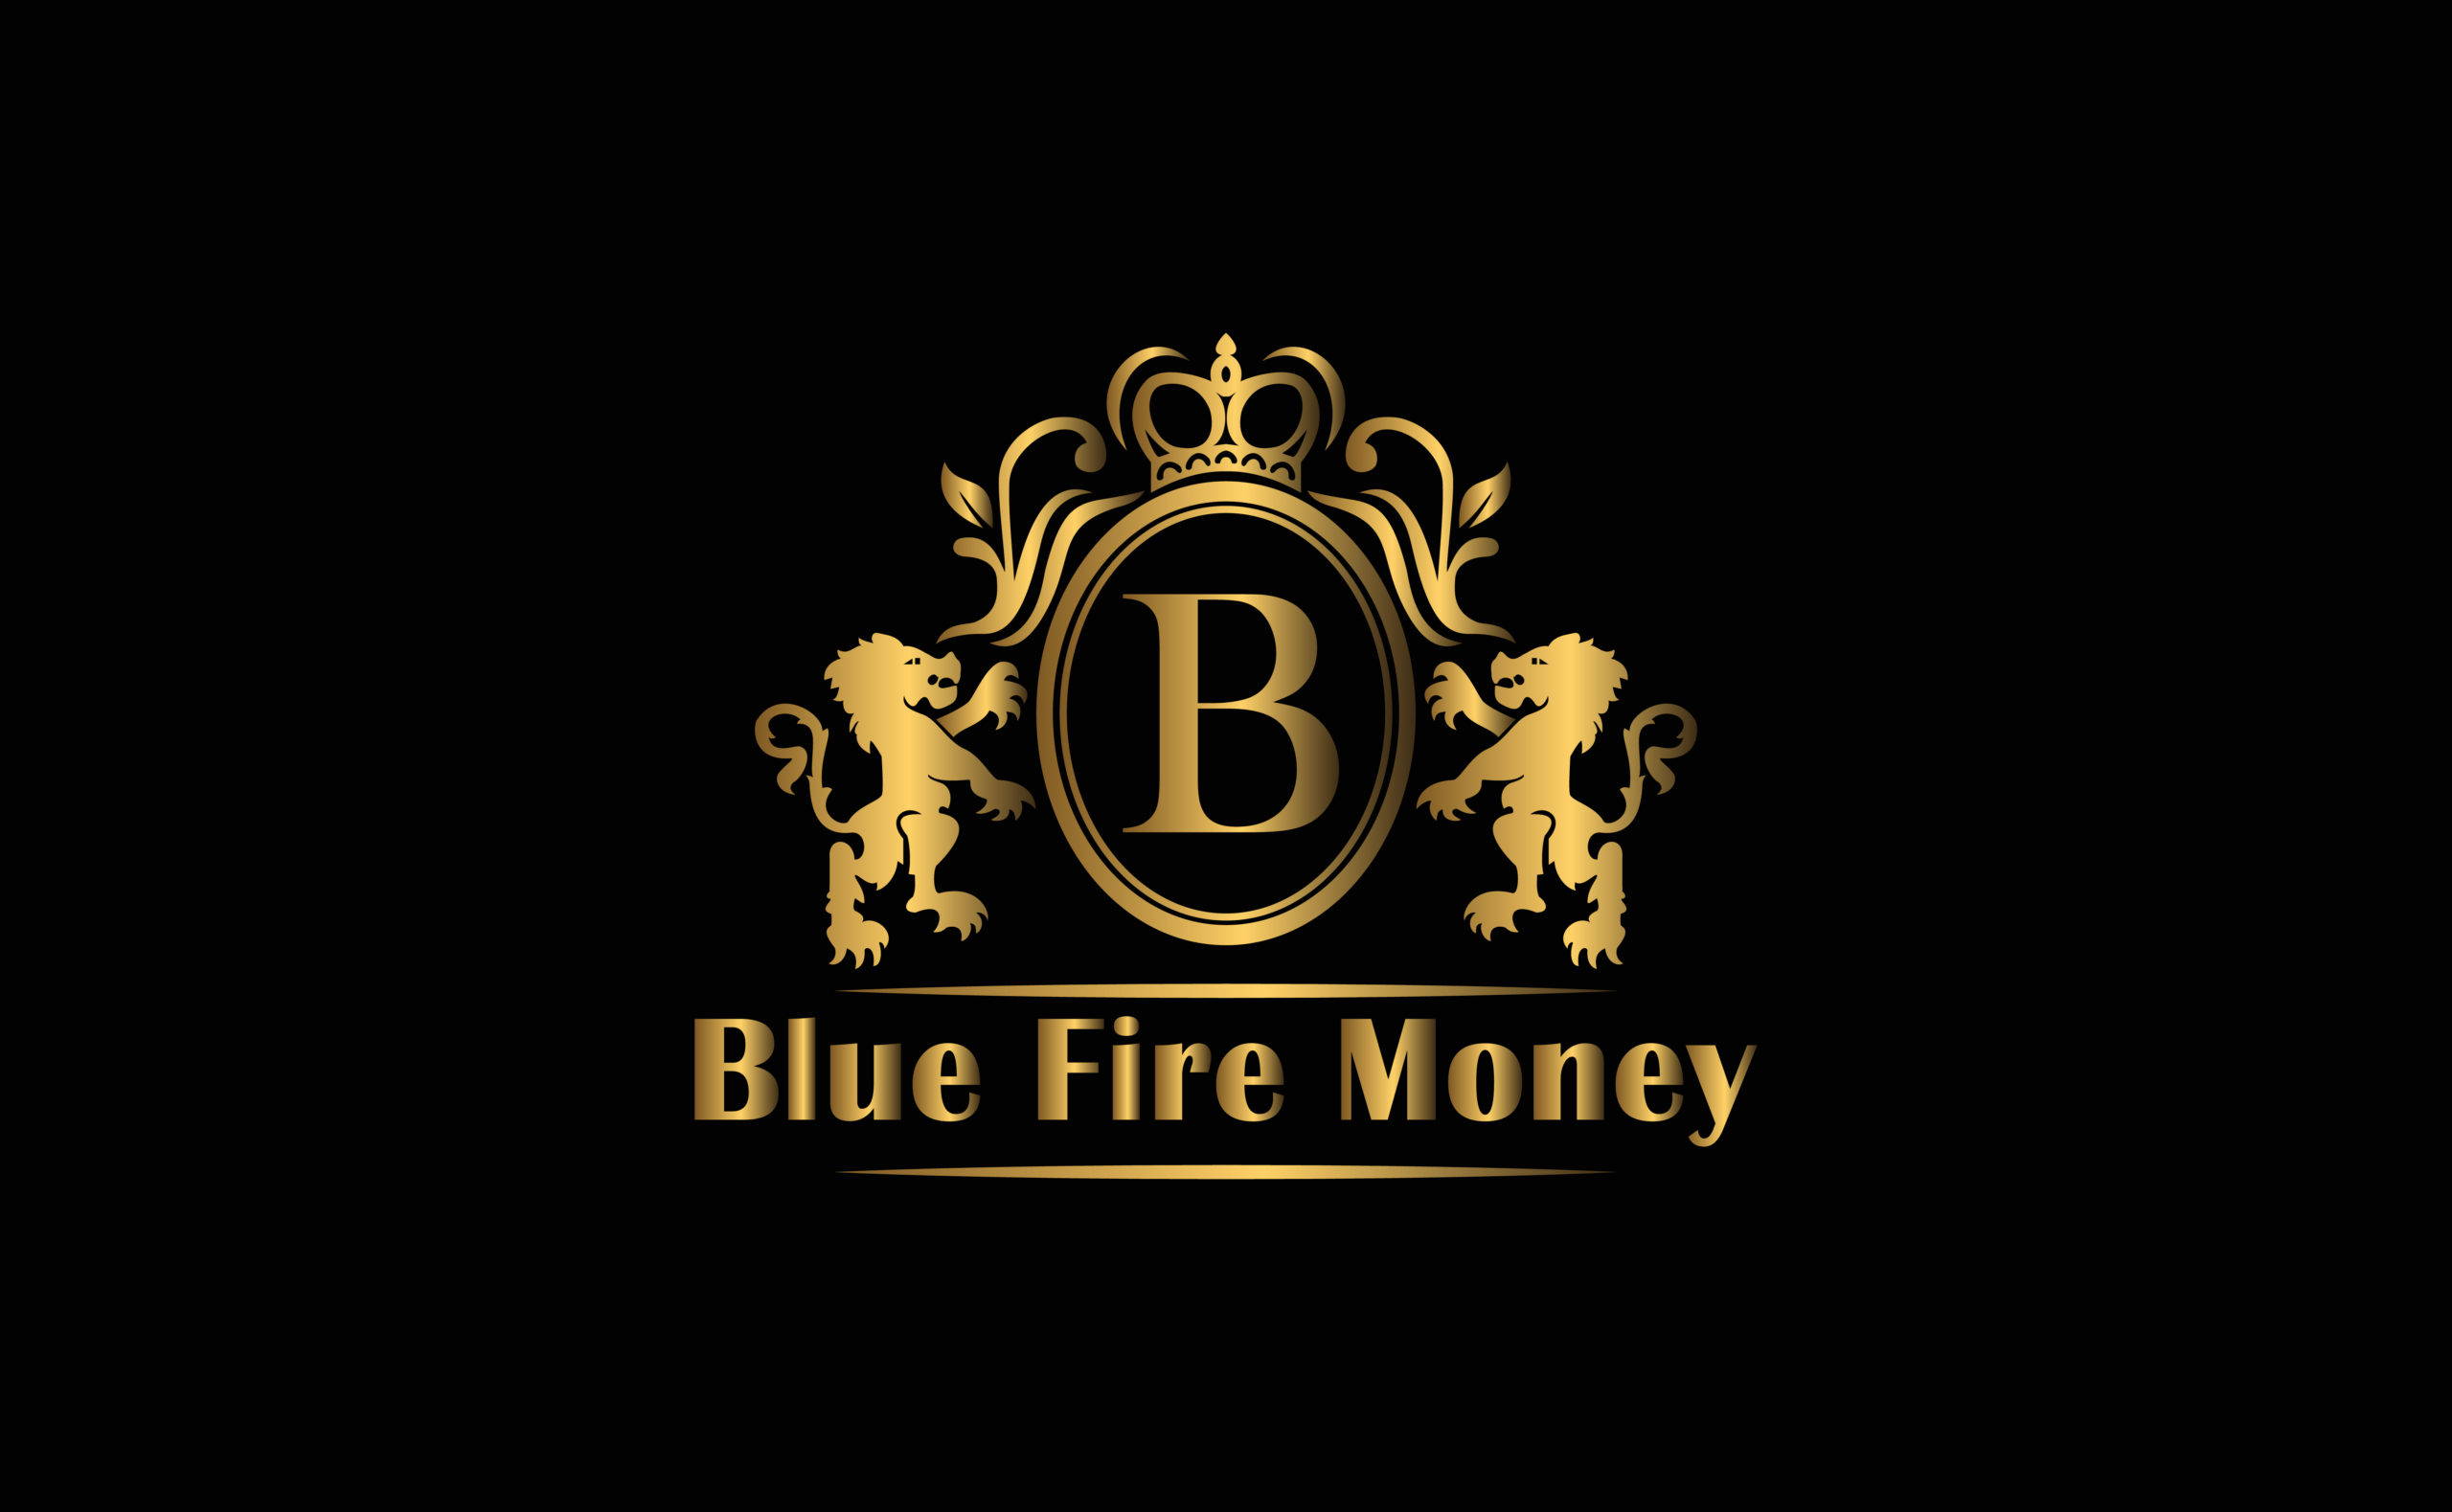 Bluefiremoney.com